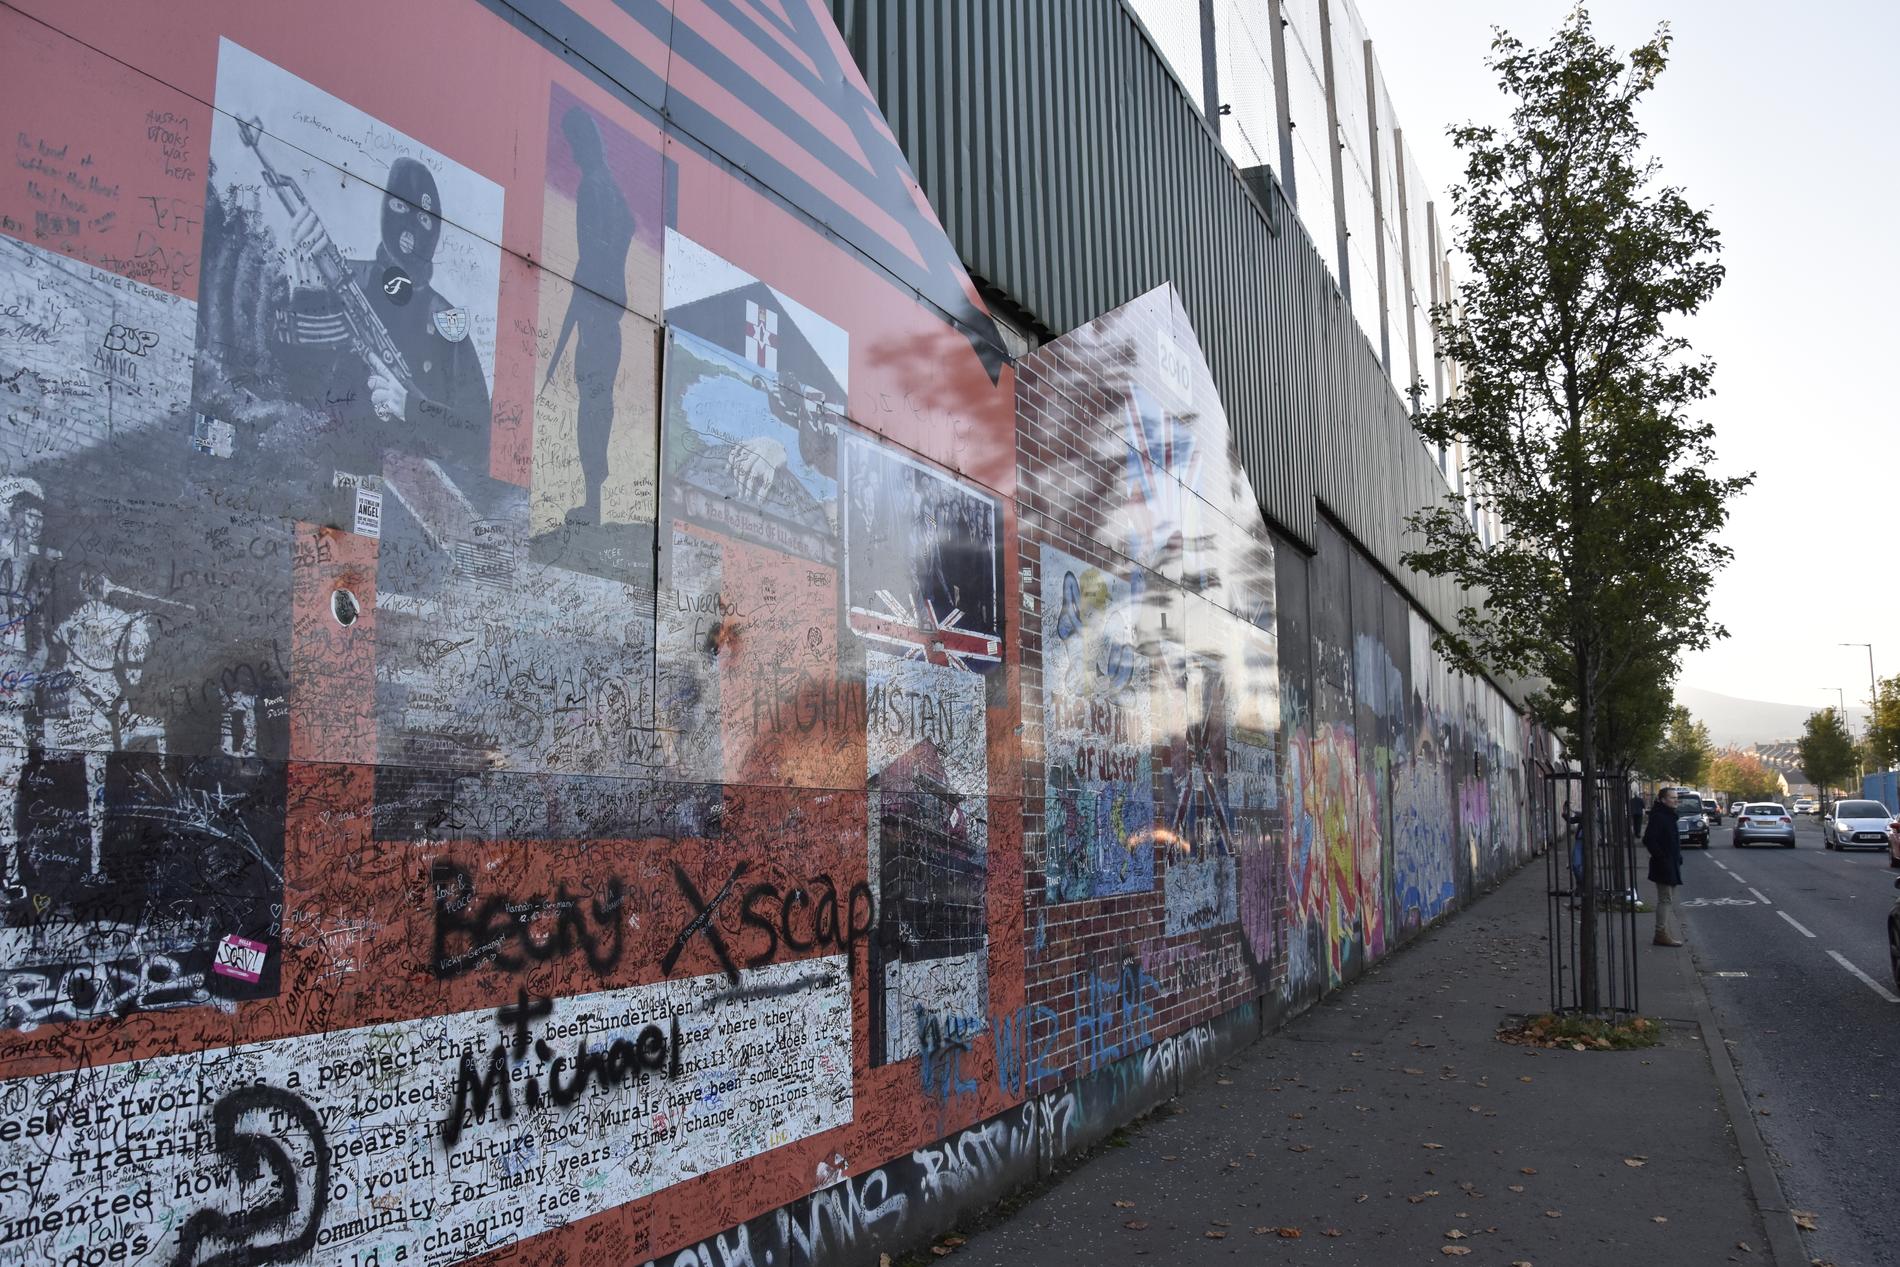 Belfast hyser fortfarande ett stort antal så kallade "fredsmurar", som åtskiljer katolska och protestantiska bostadskvarter. På murarna finns mängder av målningar som glorifierar den egna sidans väpnade insatser under de värsta orosåren på 1970- och 80-talen.